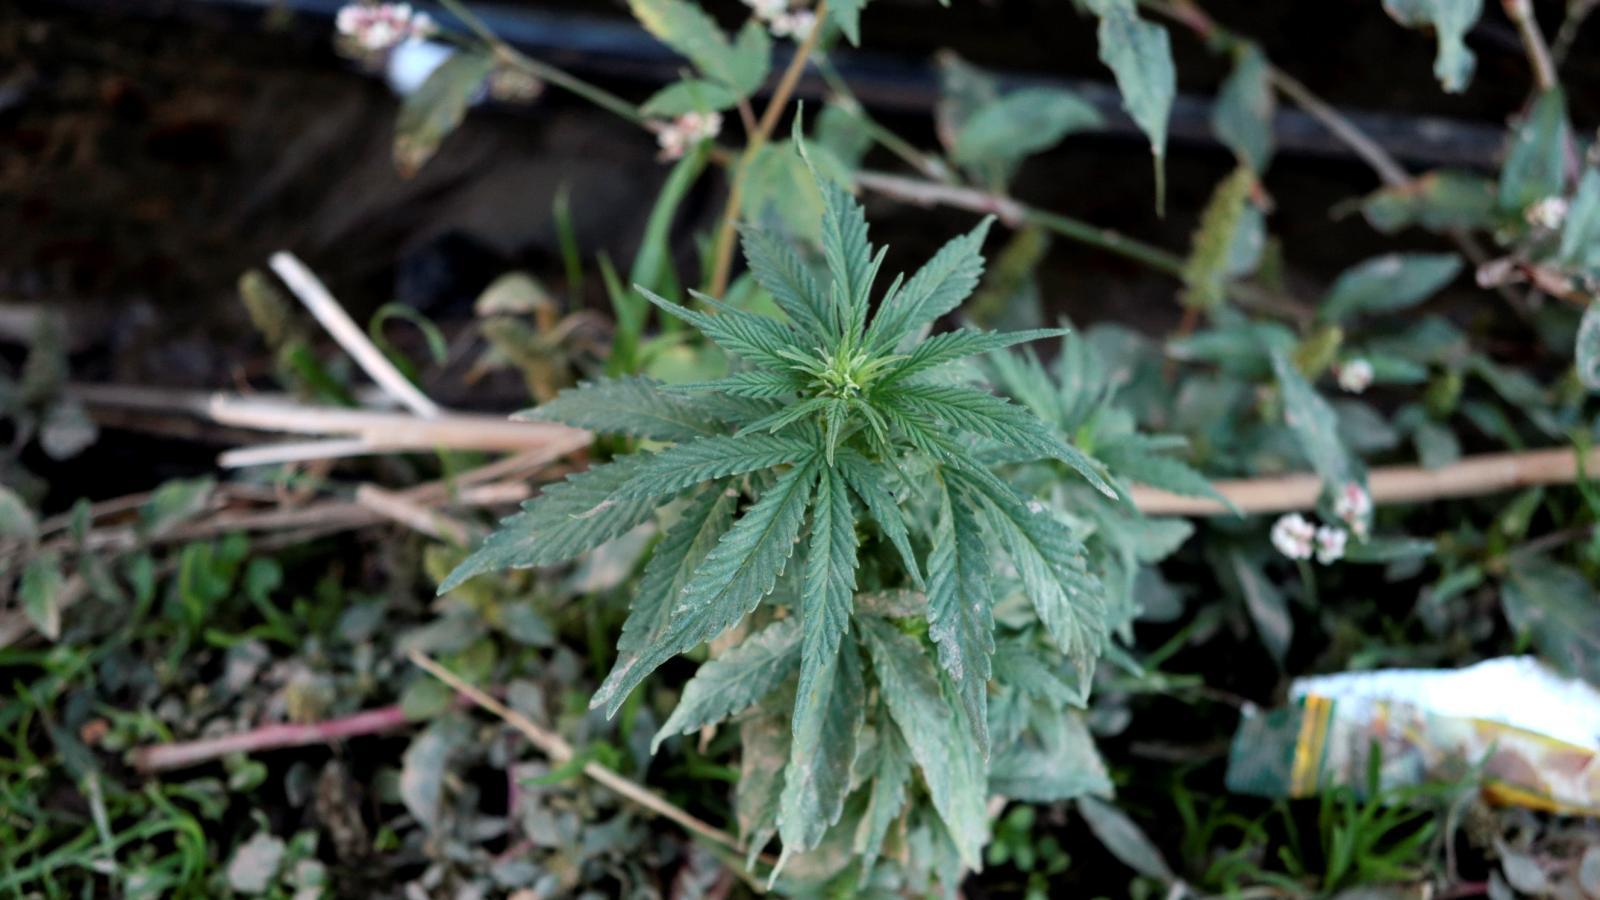 Desmantelan una plantación de marihuana en Algete con más de 700 plantas